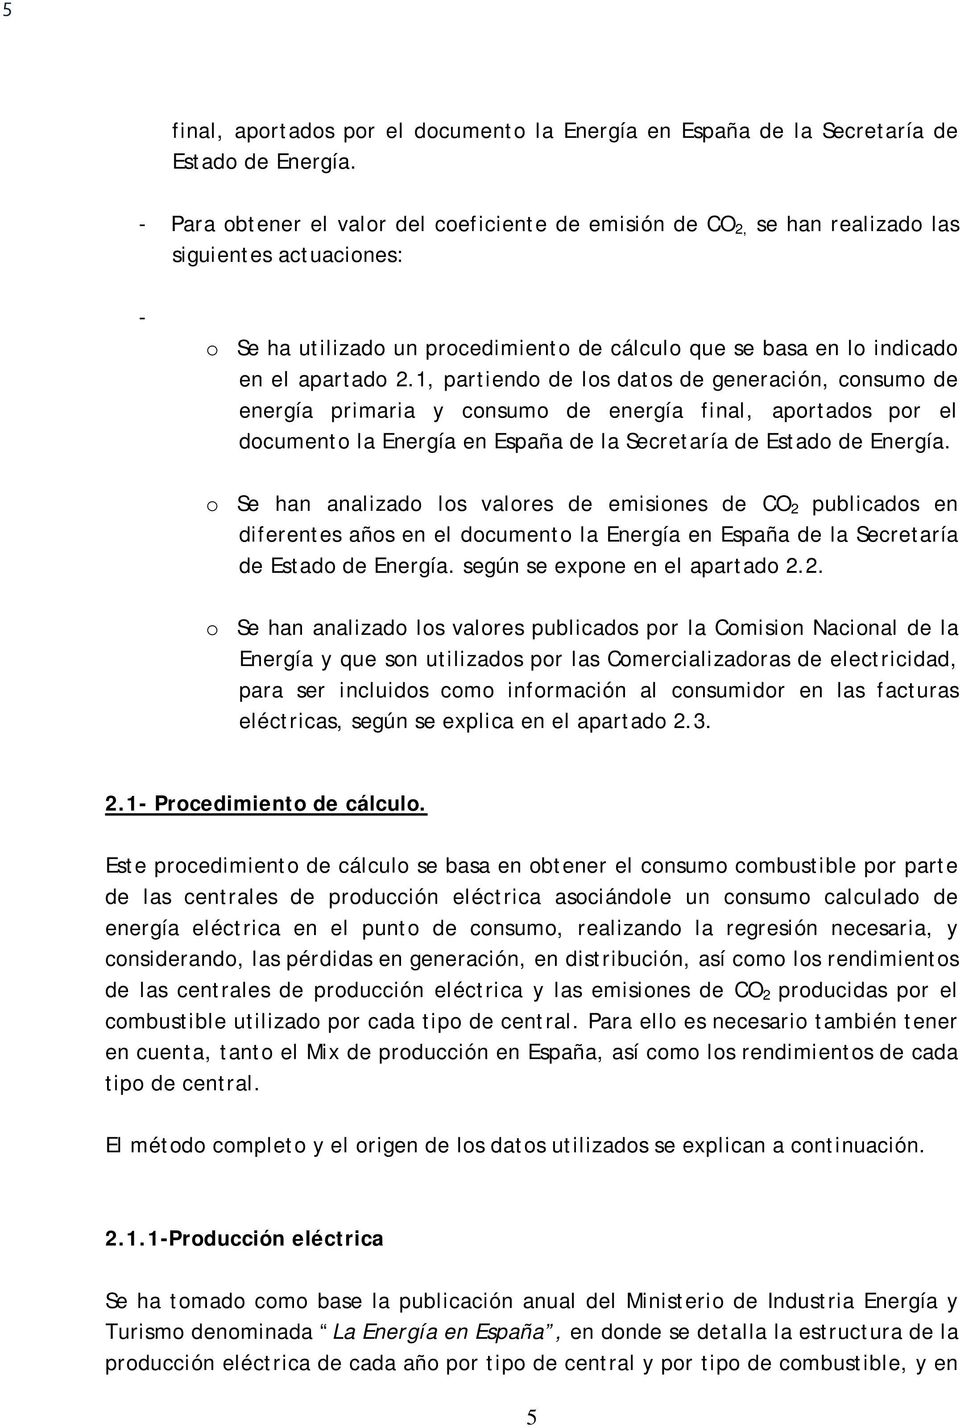 1, partiendo de los datos de generación, consumo de energía primaria y consumo de energía final, aportados por el documento la Energía en España de la Secretaría de Estado de Energía.